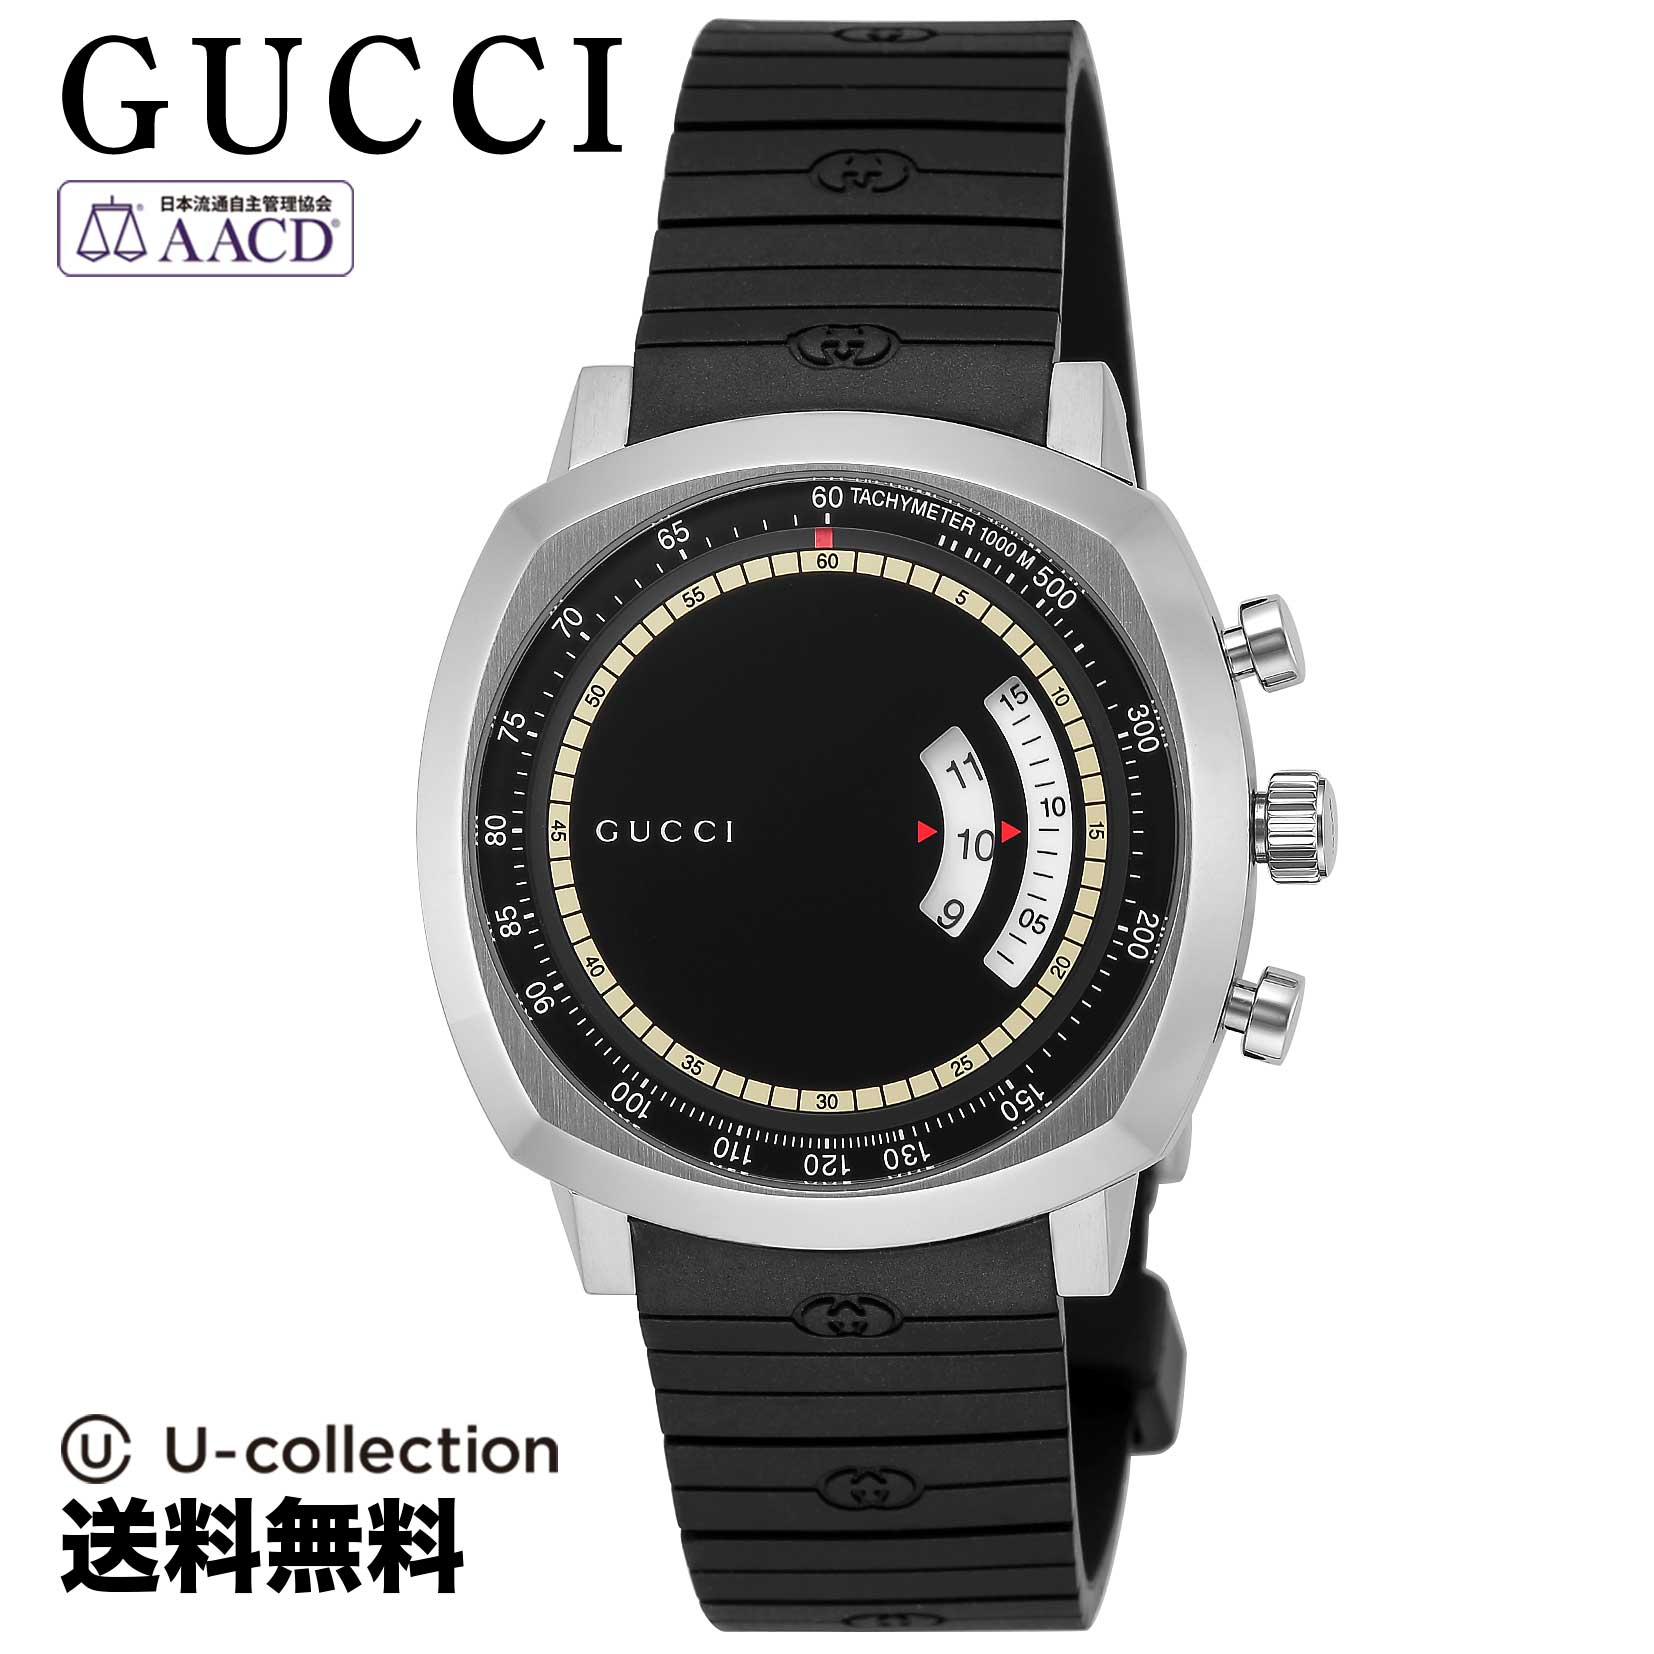 【腕時計】GUCCI GRIP ユニセックス ブラック クォーツ YA157301 時計 ブランド